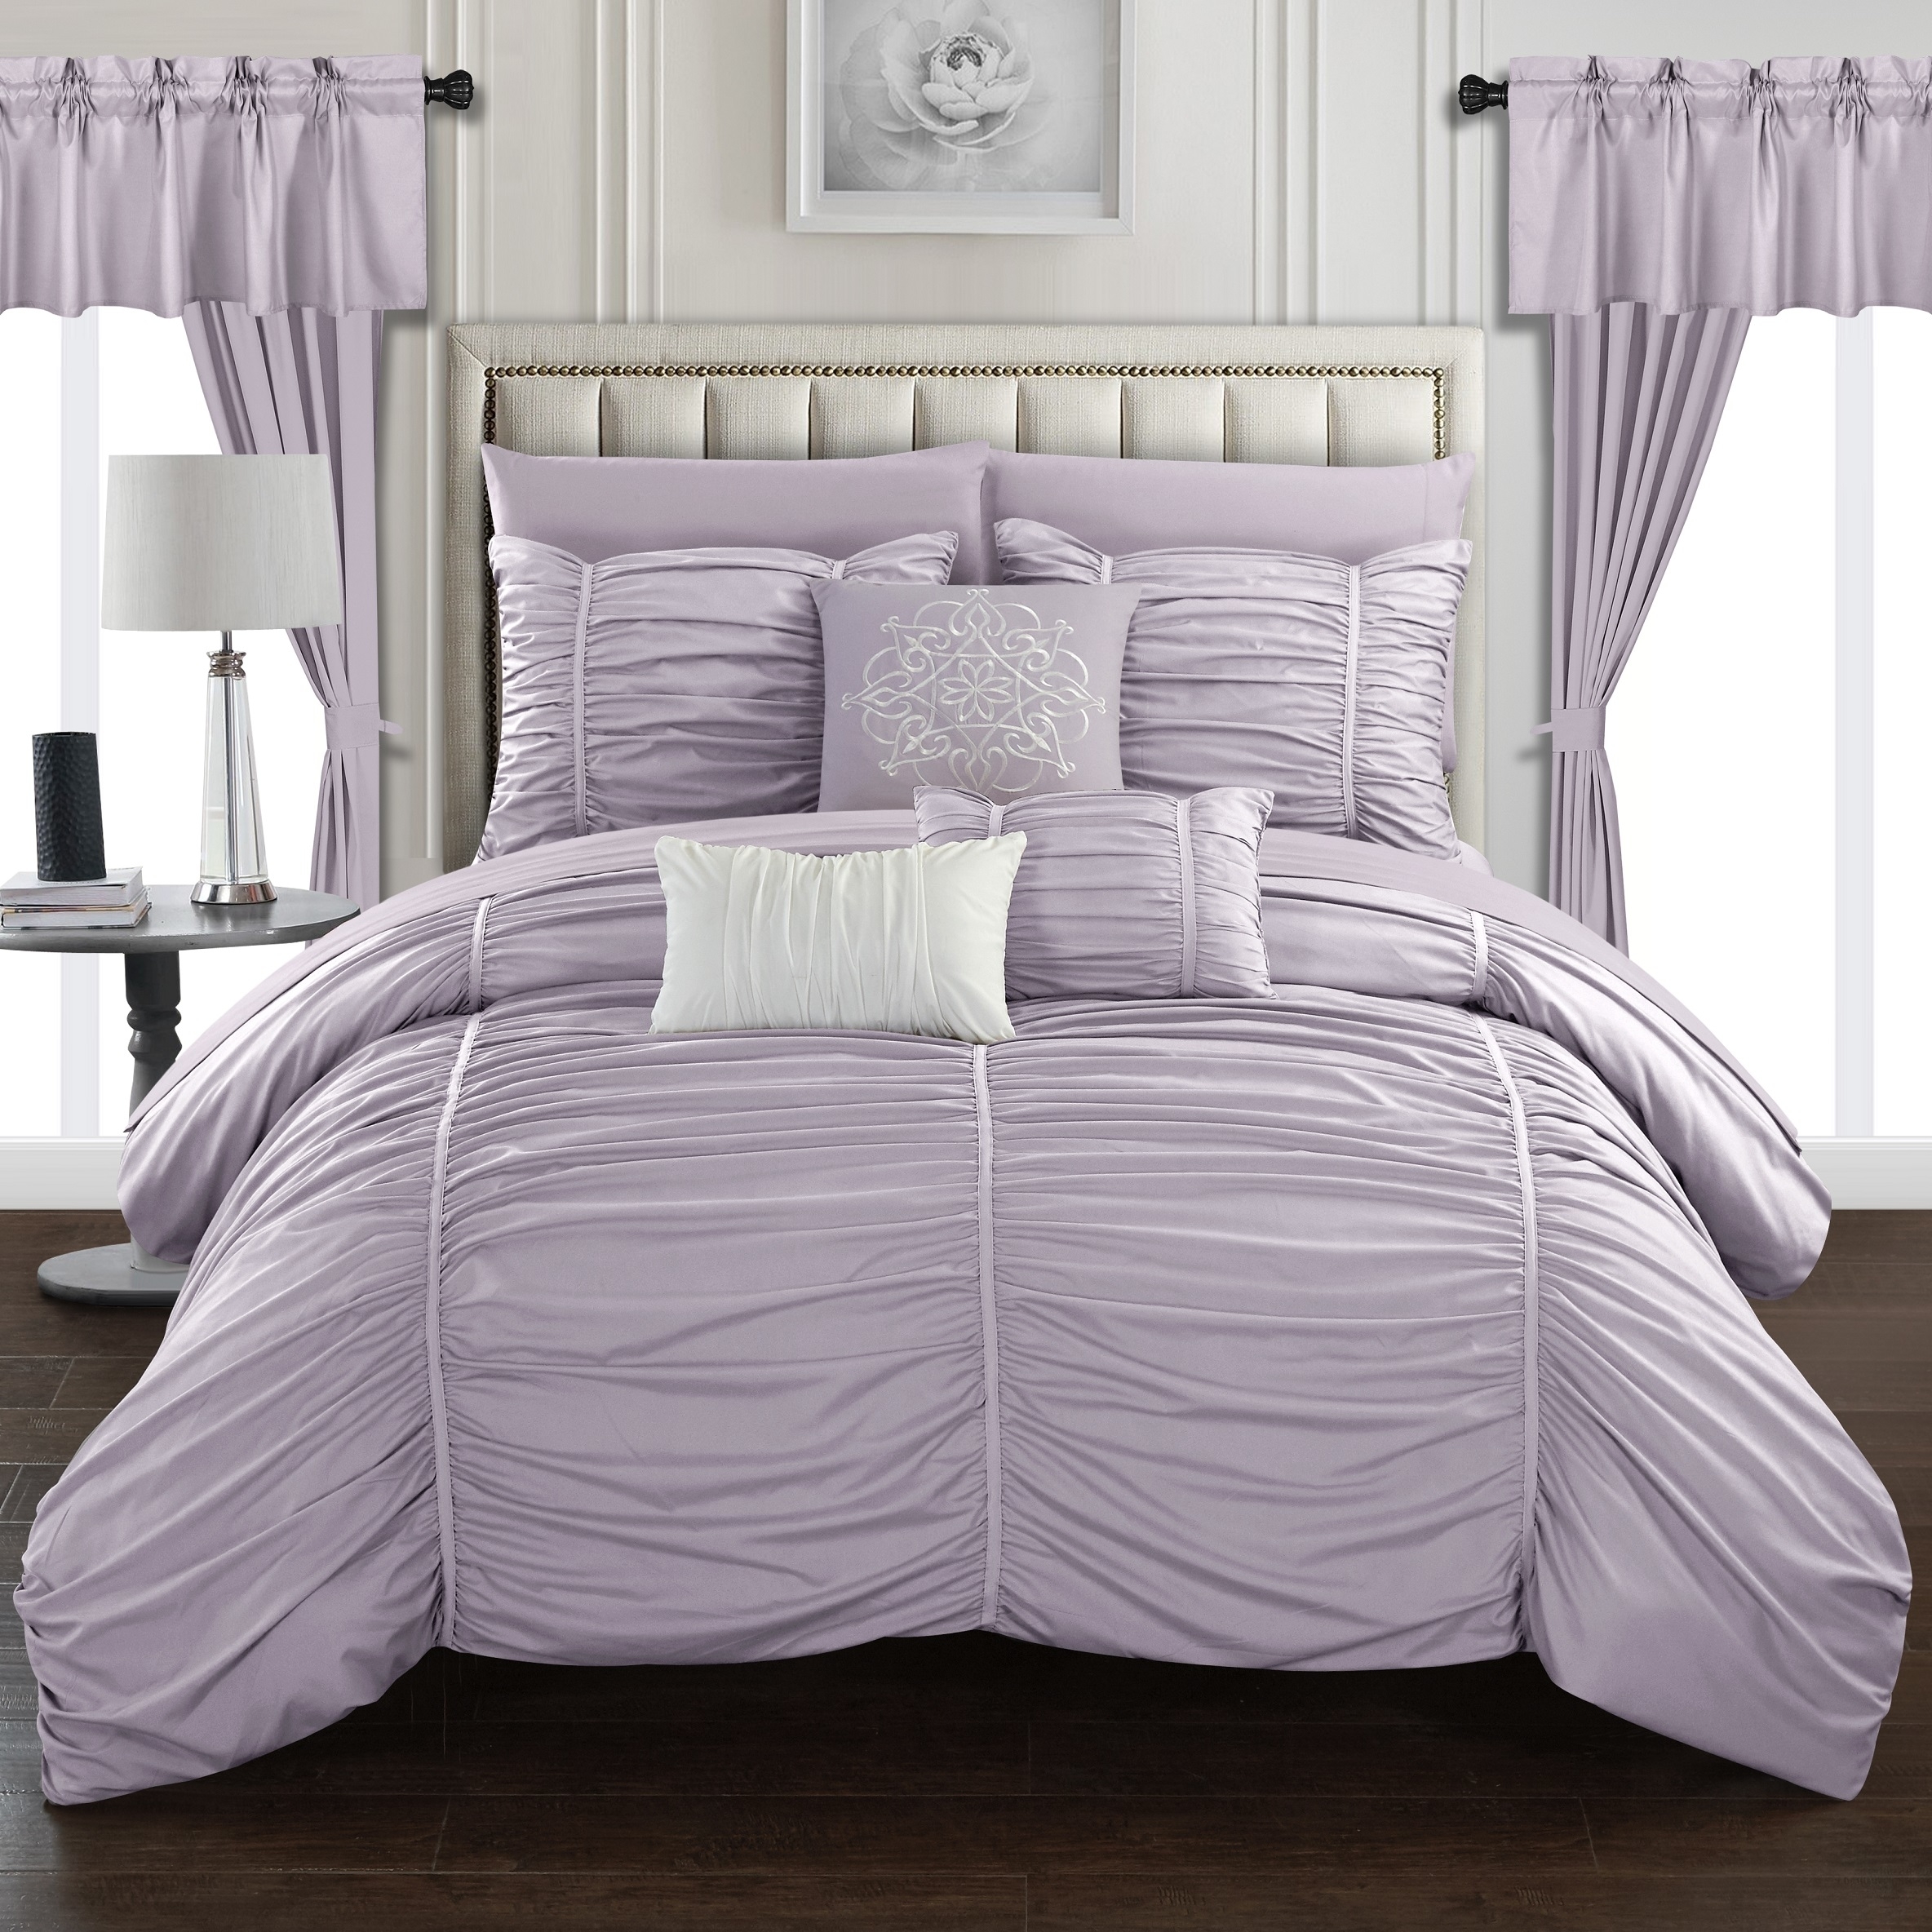 Gruyeres 20 Piece Comforter Set Ruffled Ruched Designer Bedding - Navy, Queen